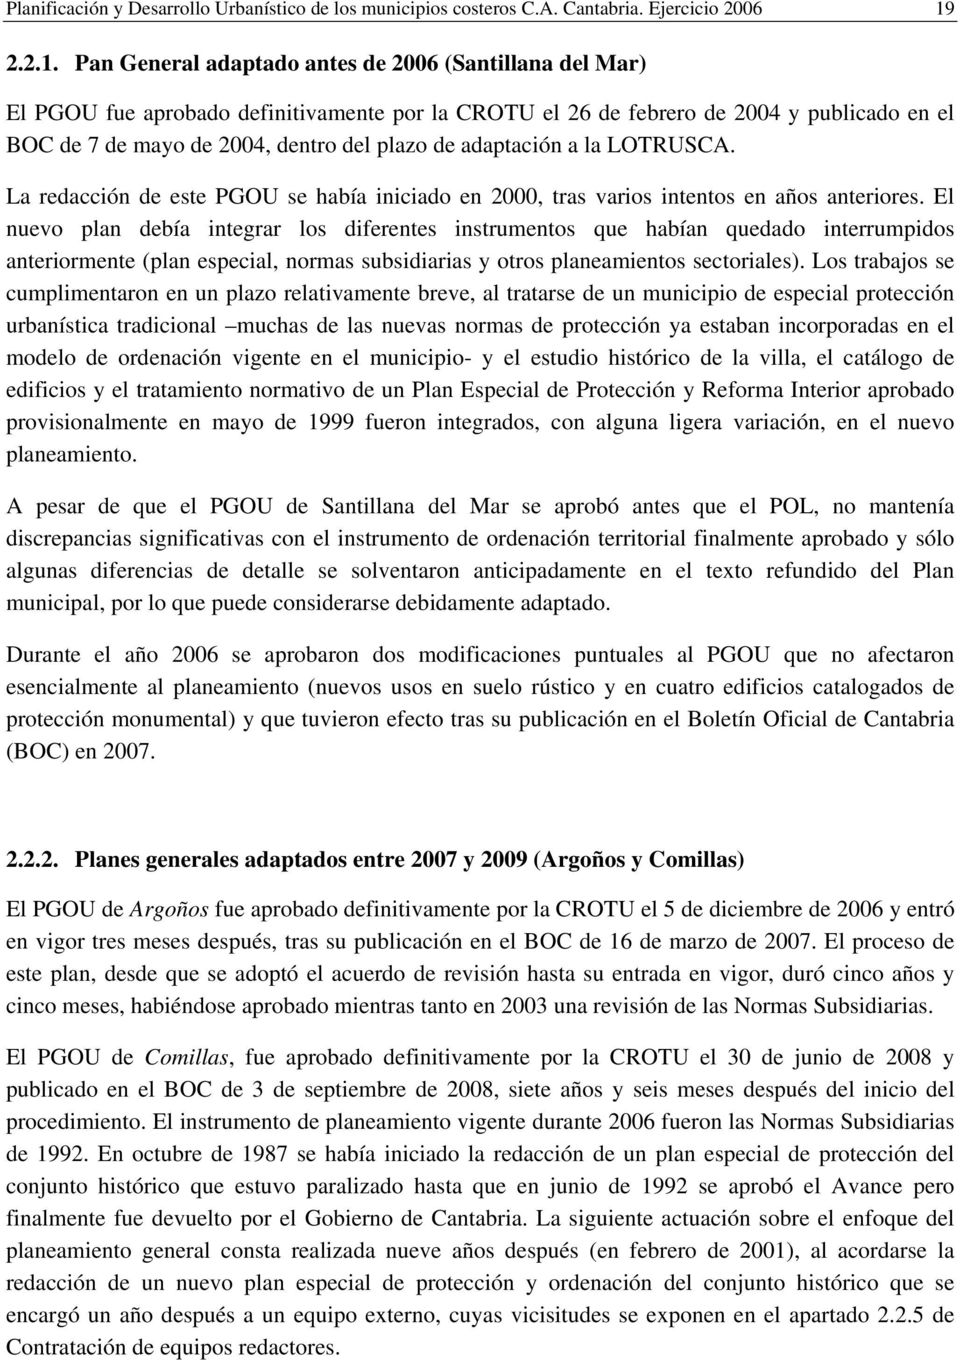 Pan General adaptado antes de 2006 (Santillana del Mar) El PGOU fue aprobado definitivamente por la CROTU el 26 de febrero de 2004 y publicado en el BOC de 7 de mayo de 2004, dentro del plazo de